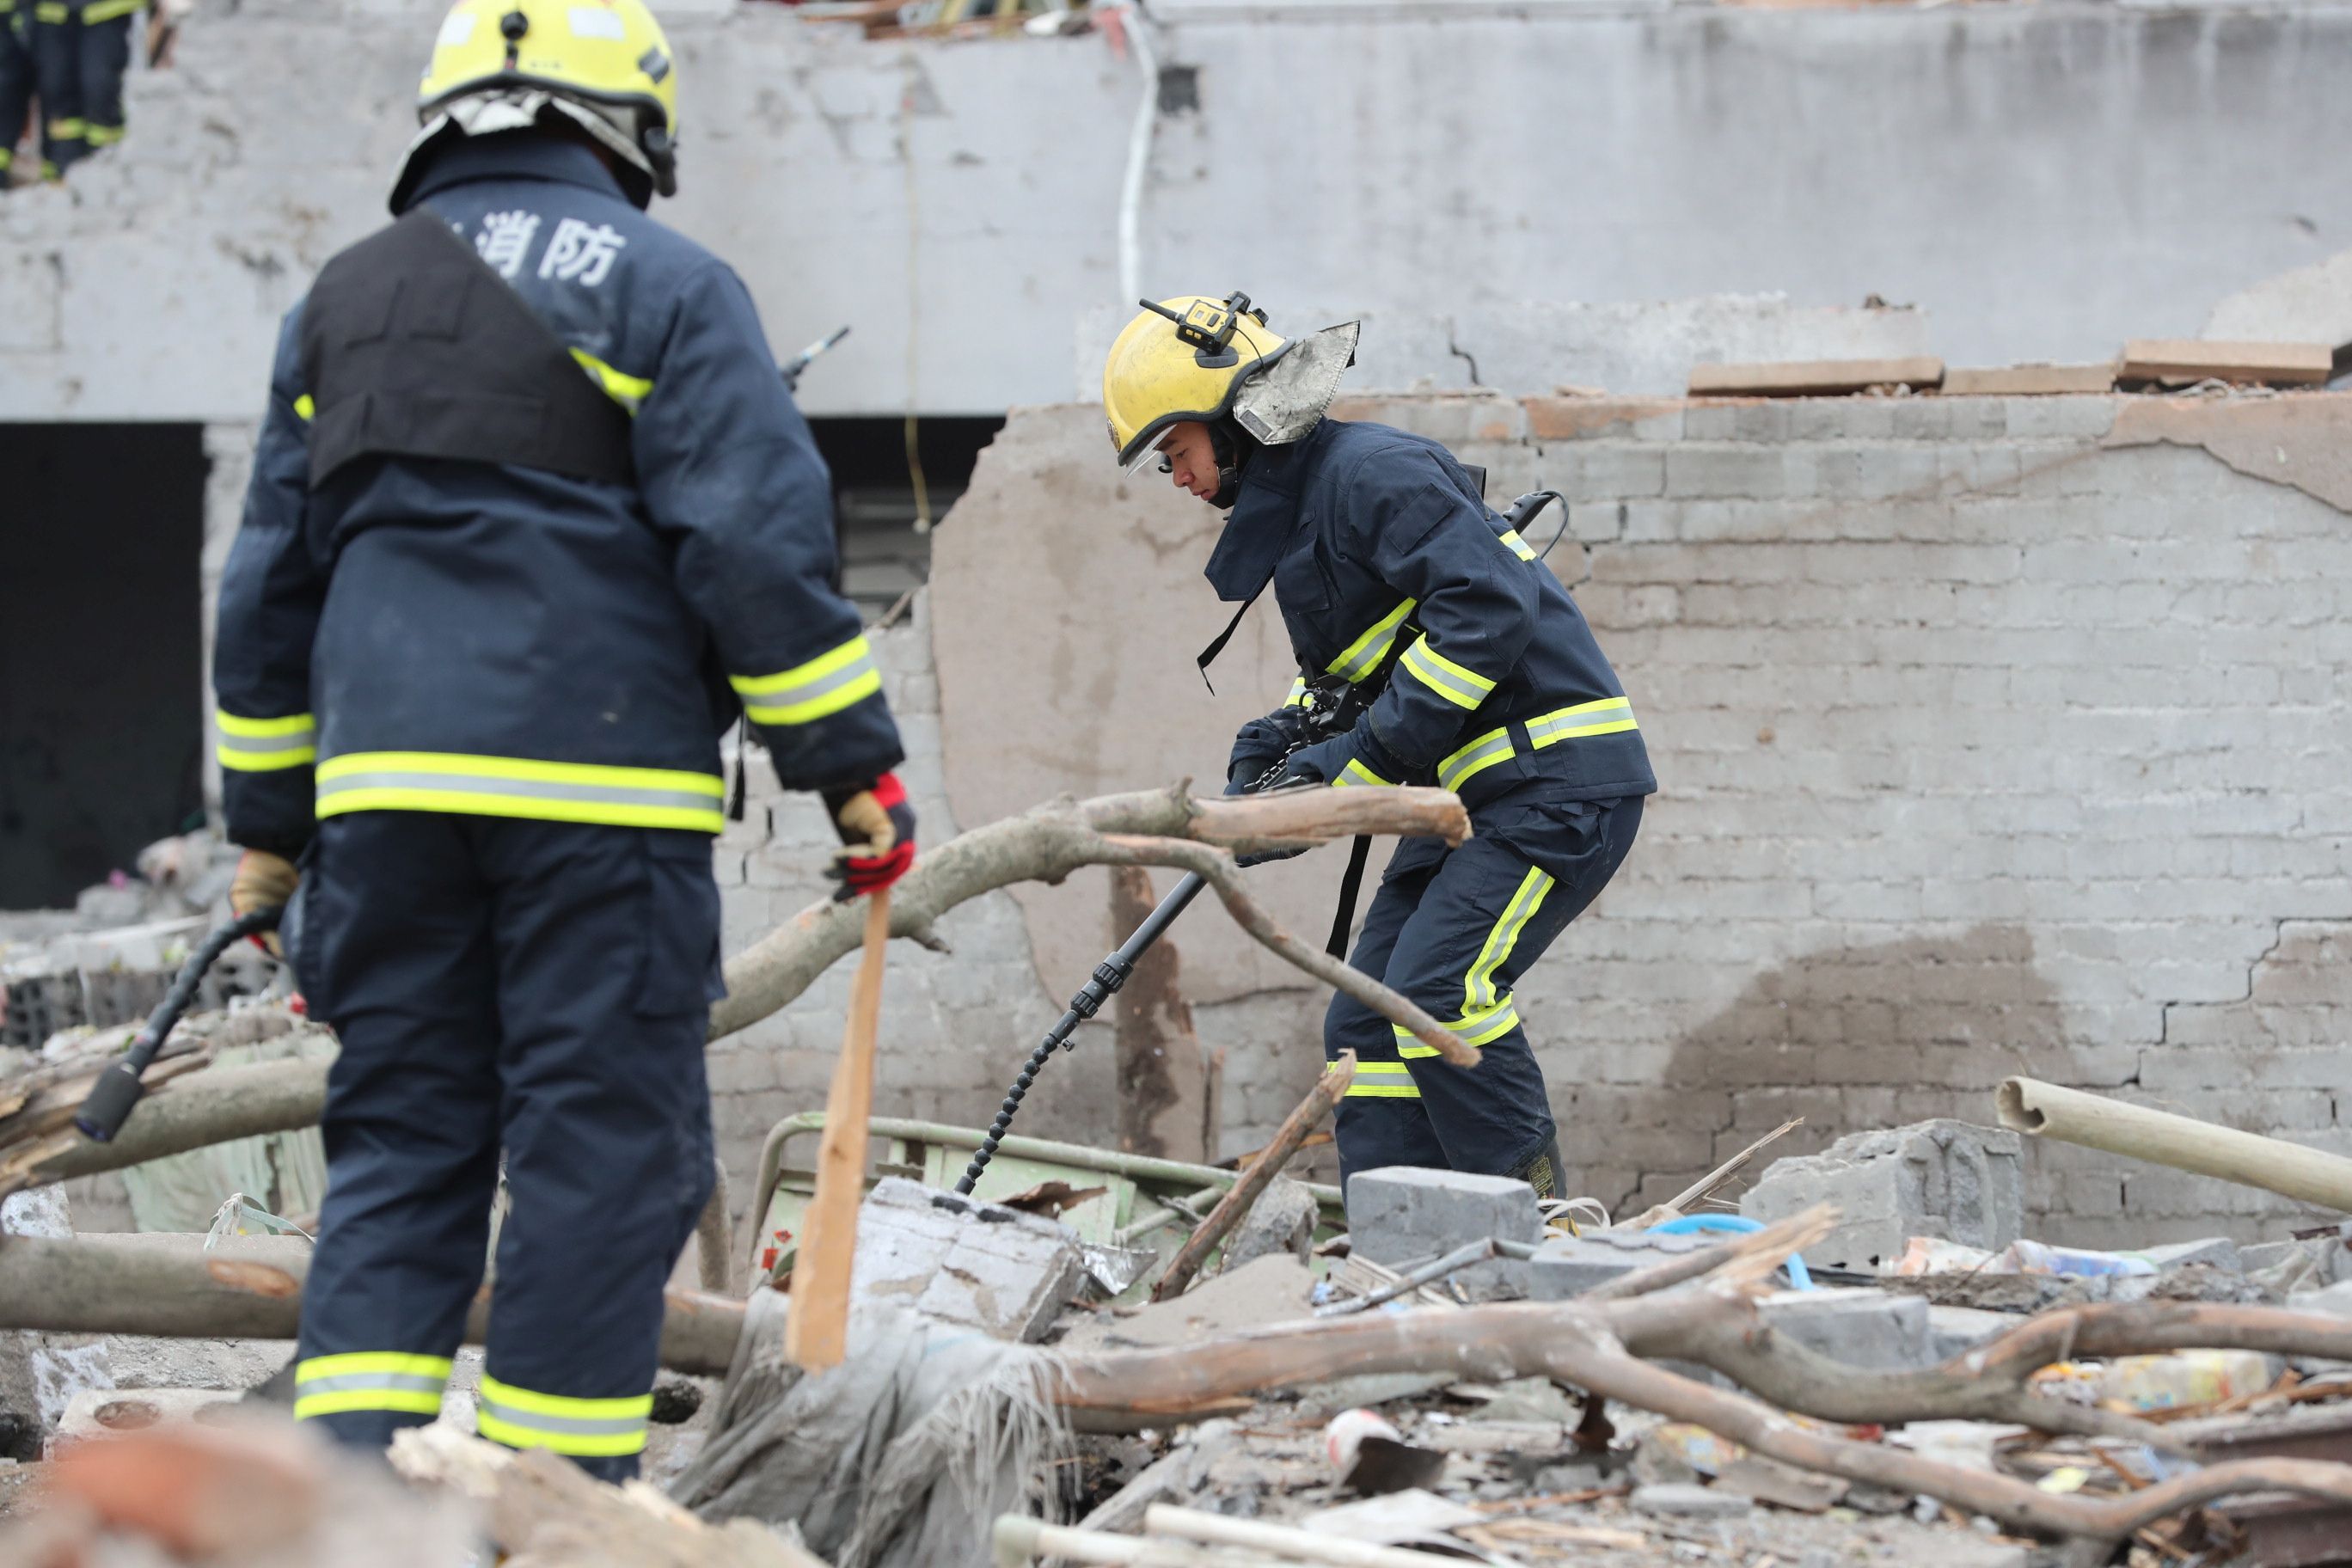  Cel puţin 19 persoane au murit în urma unei explozii la o uzină chimică din China